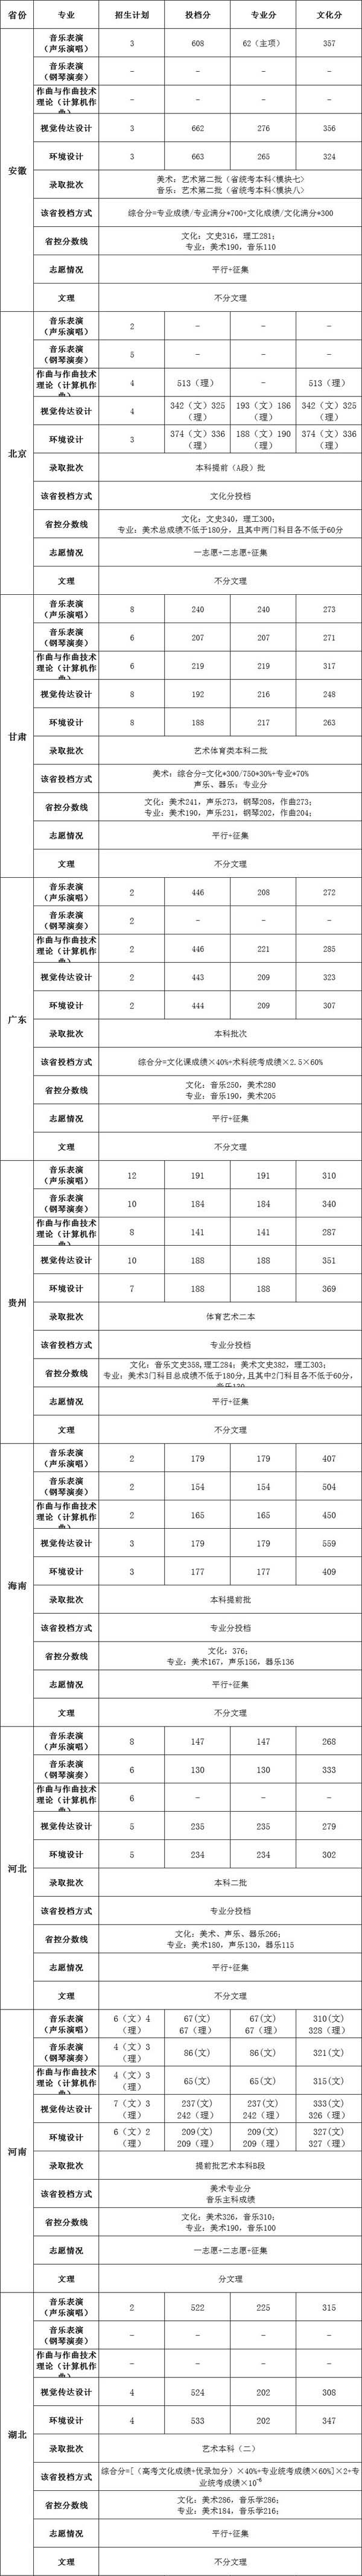 北京科技大学天津学院2018艺术类分数线